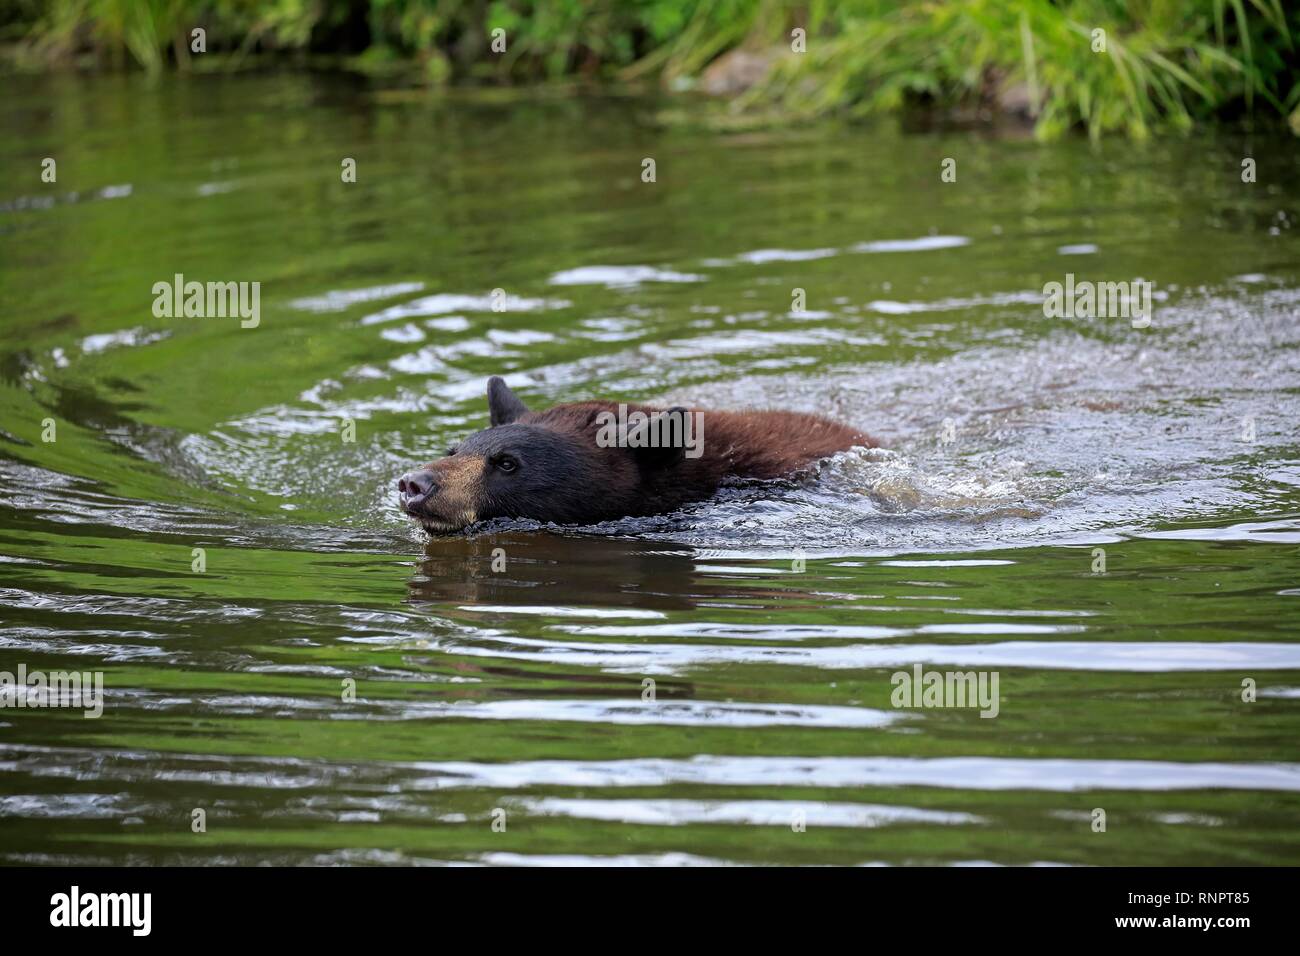 American Black Bear (Ursus americanus), giovane animale nuotare in acqua, pino County, Minnesota, Stati Uniti d'America Foto Stock